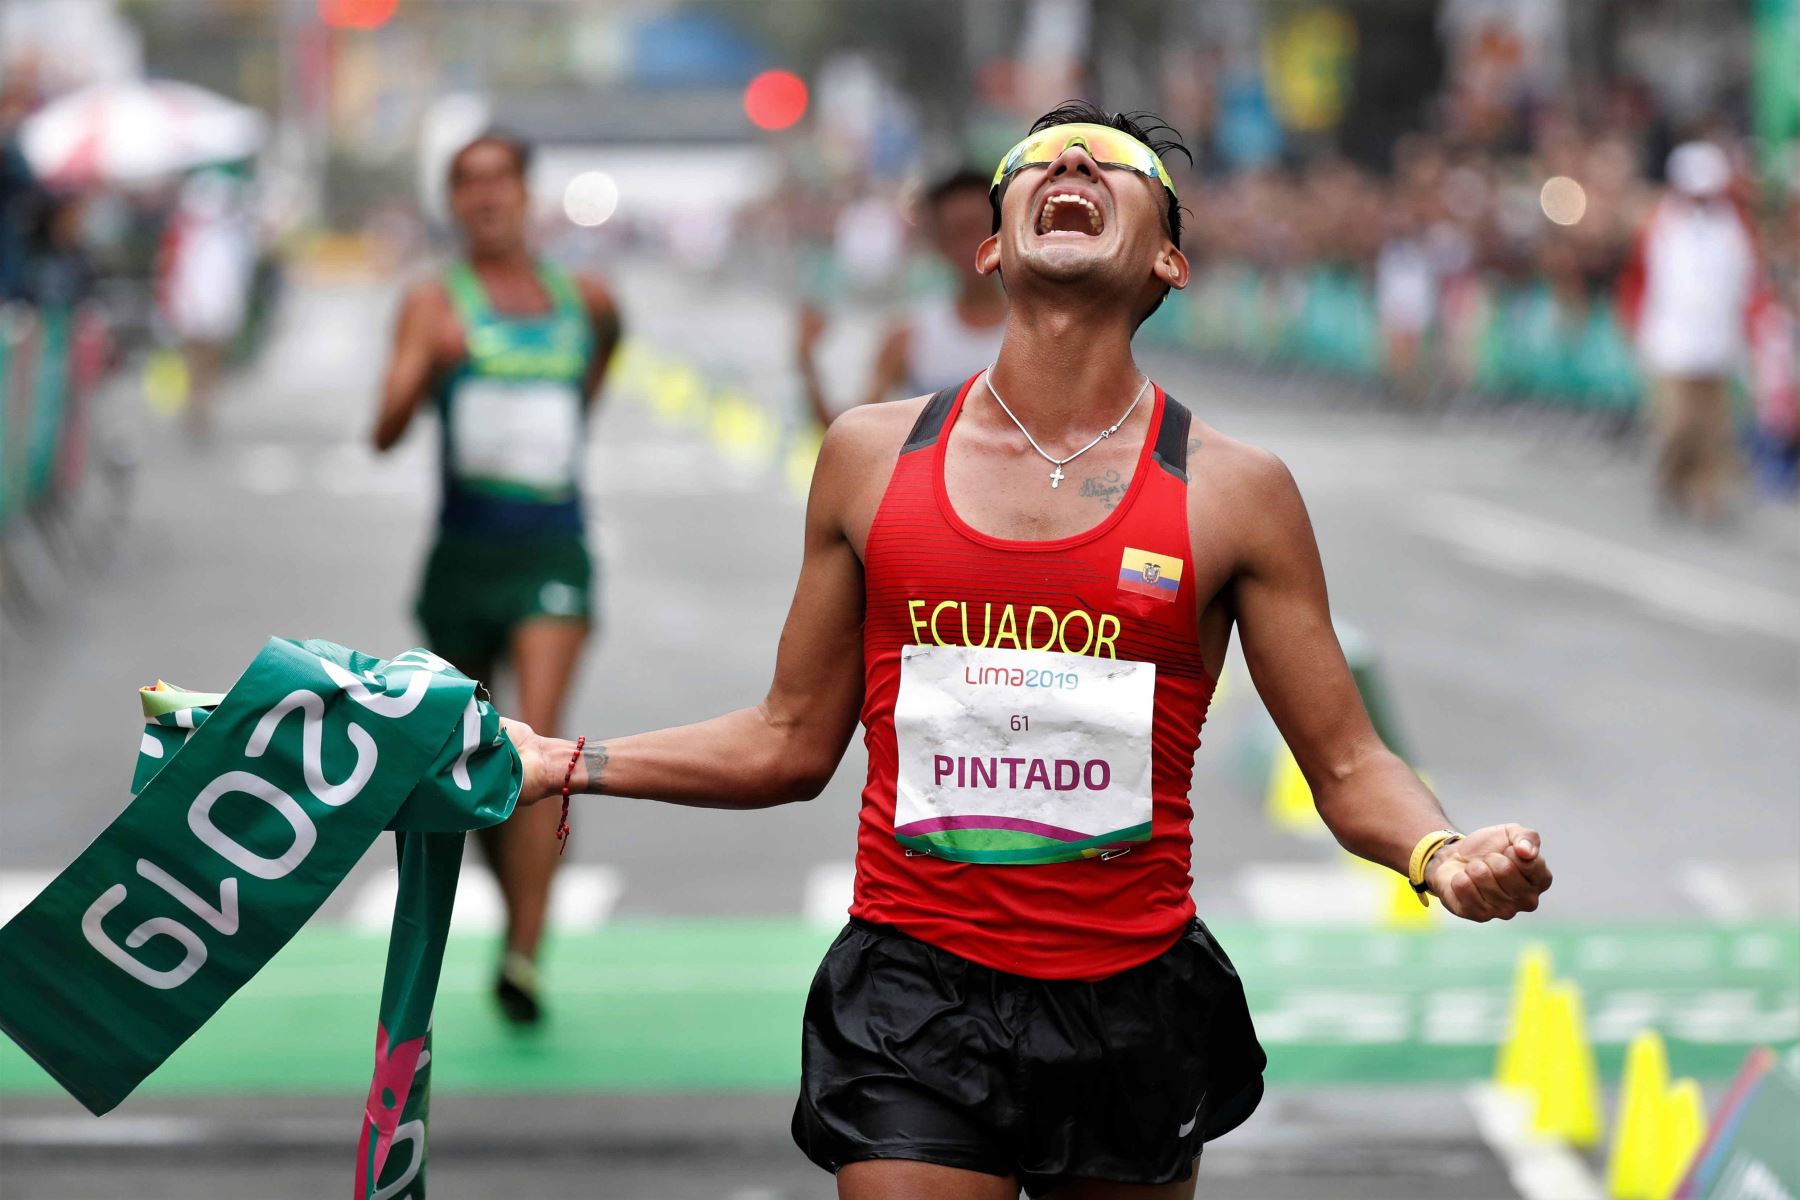 El atleta ecuatoriano Brian Pintado cruza la meta para ganar la medalla de oro en la prueba de marcha masculina 20 km,  en los Juegos Panamericanos Lima 2019. Foto: EFE